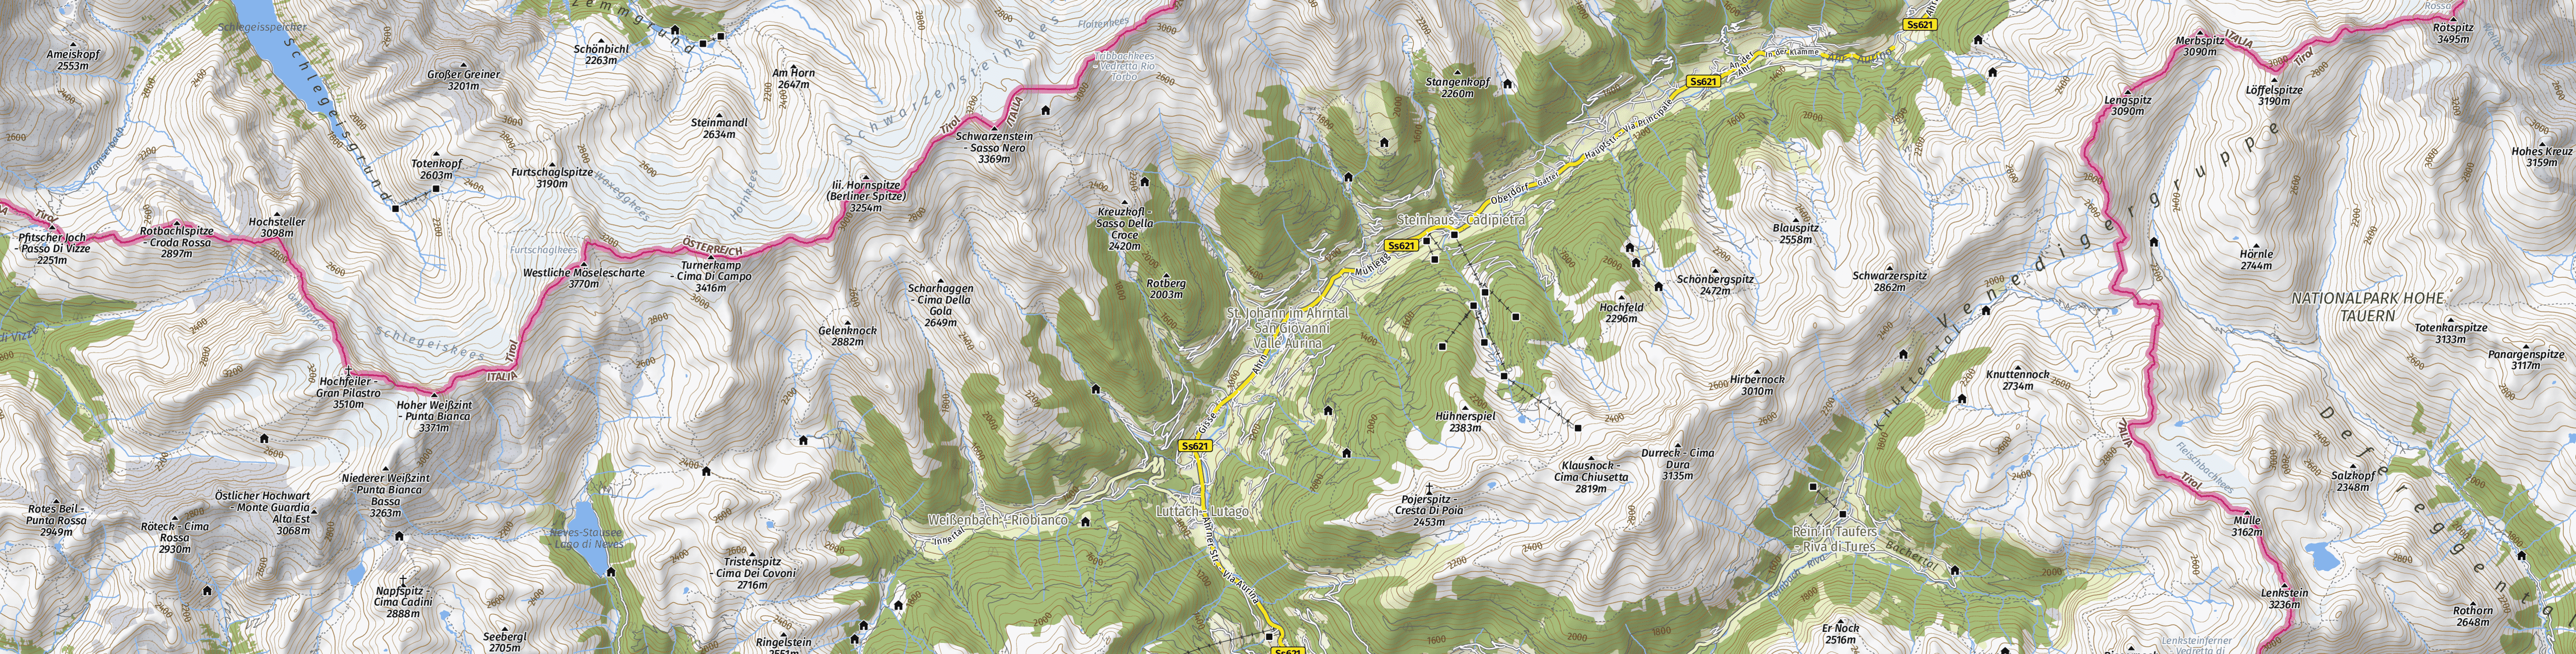 outdoor map contour hillshade vector WebGIS TMS